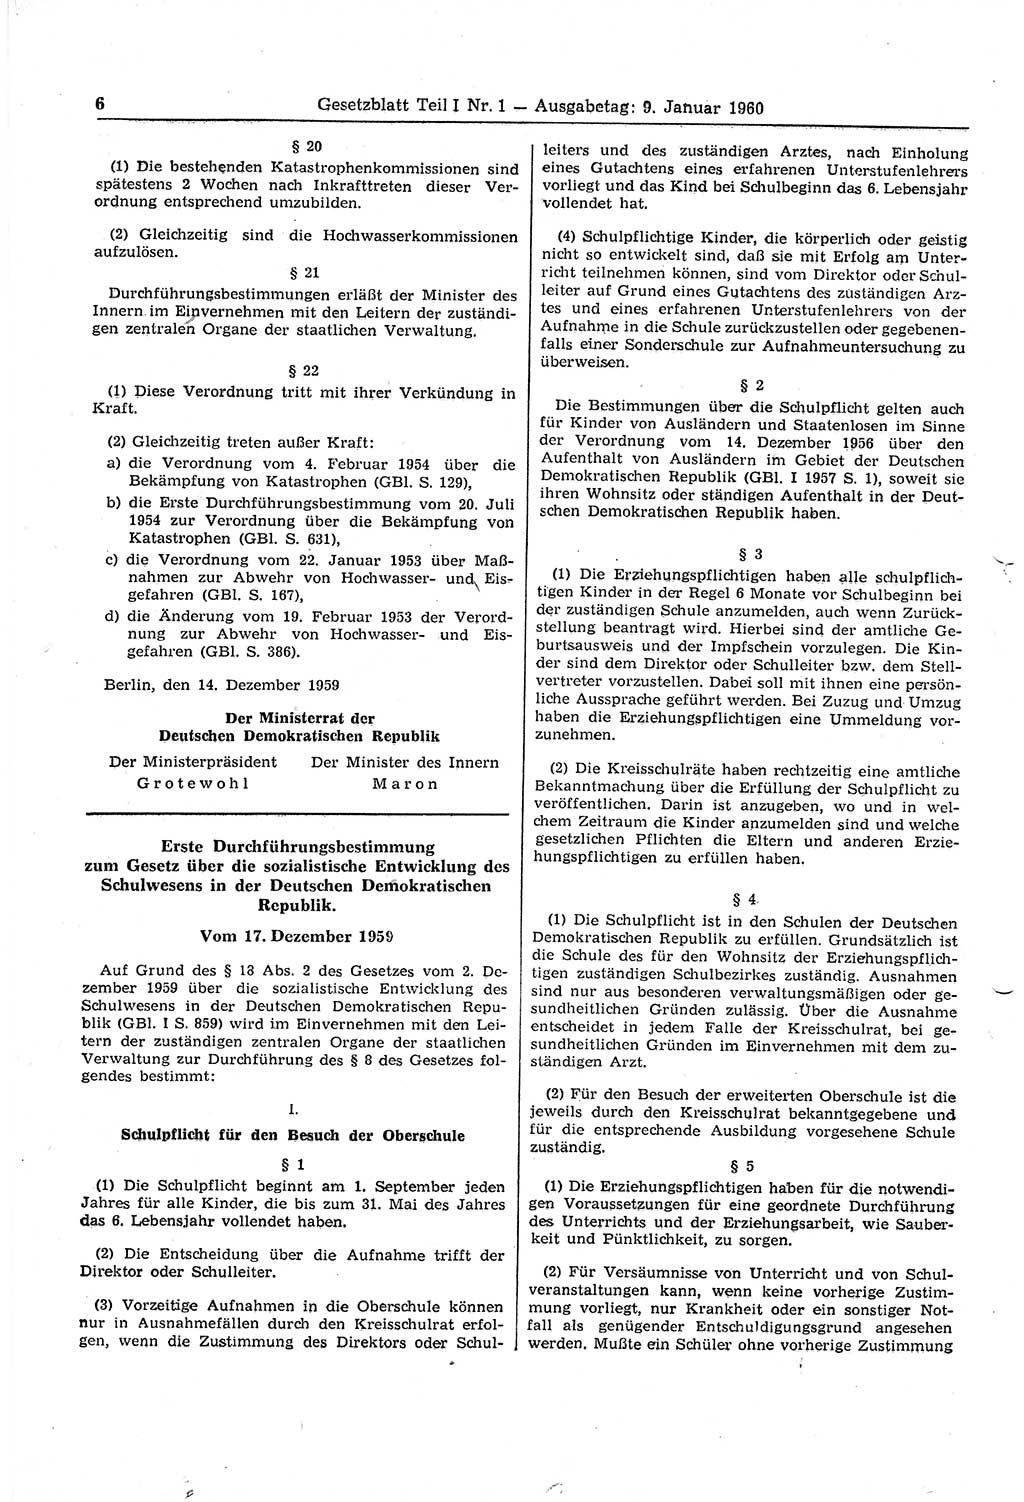 Gesetzblatt (GBl.) der Deutschen Demokratischen Republik (DDR) Teil Ⅰ 1960, Seite 6 (GBl. DDR Ⅰ 1960, S. 6)